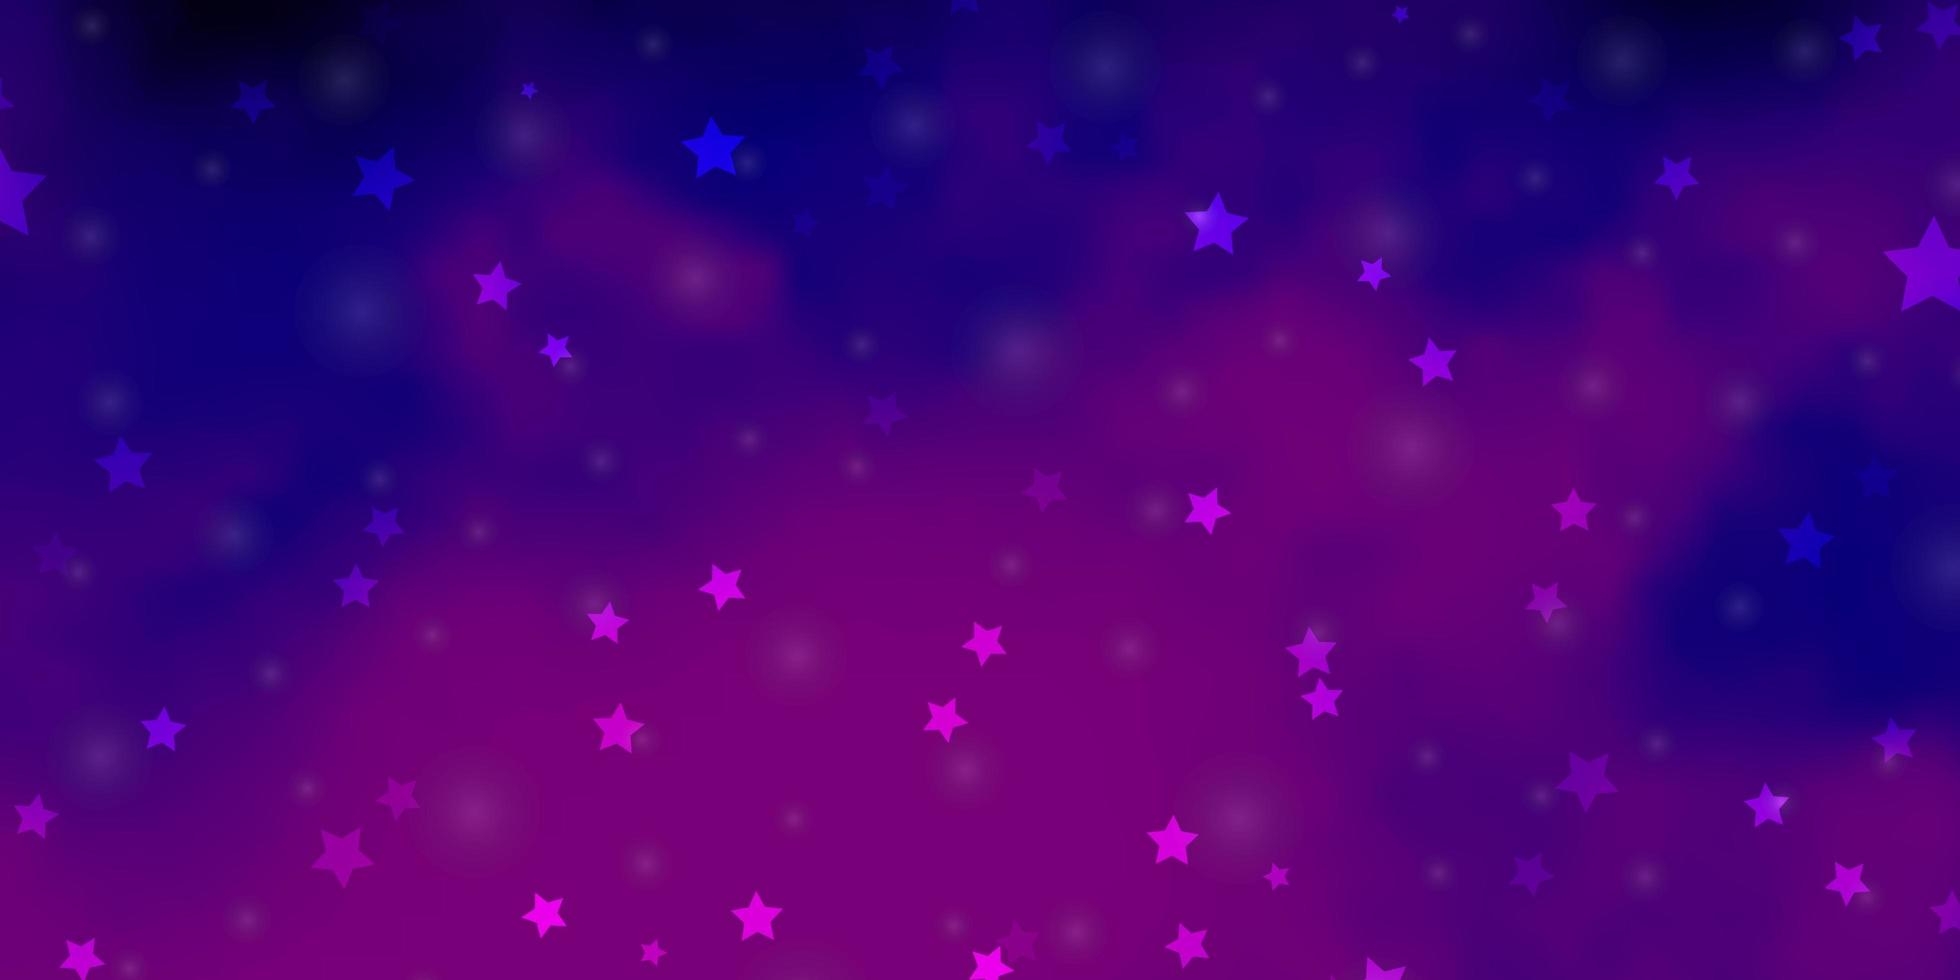 modelo de vetor rosa claro roxo com estrelas de néon. desfocar design decorativo em estilo simples com estrelas. padrão para anúncio de ano novo, livretos.